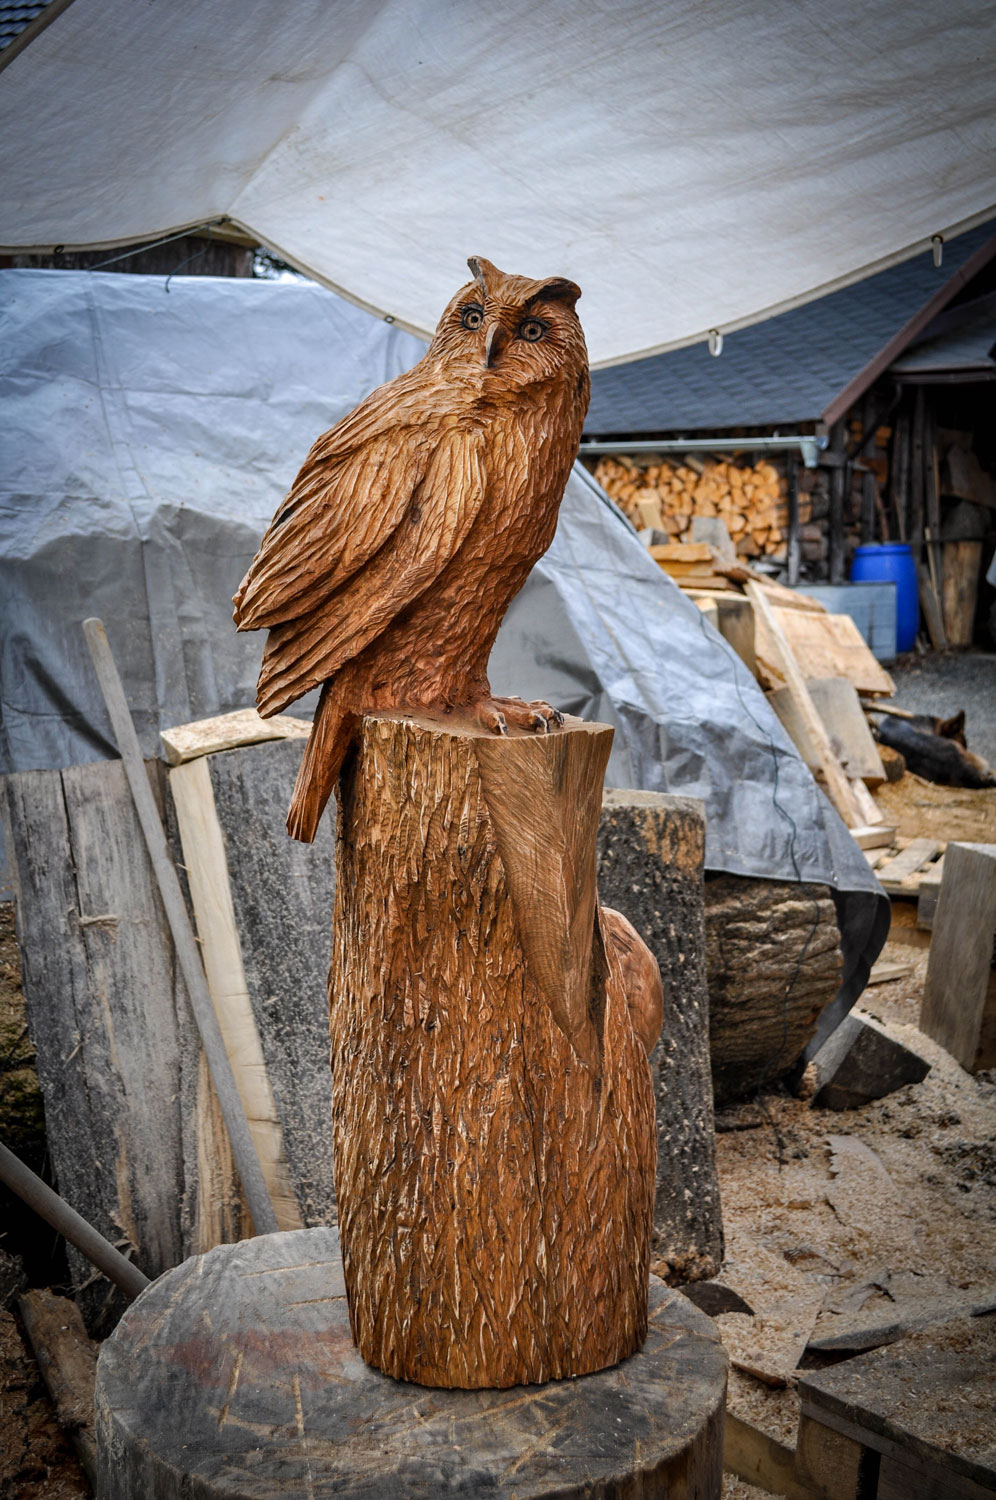 rezbar-drevorezba-vyrezavani-carving-wood-drevo-socha-bysta-vyr-120cm-radekzdrazil-20210425-05